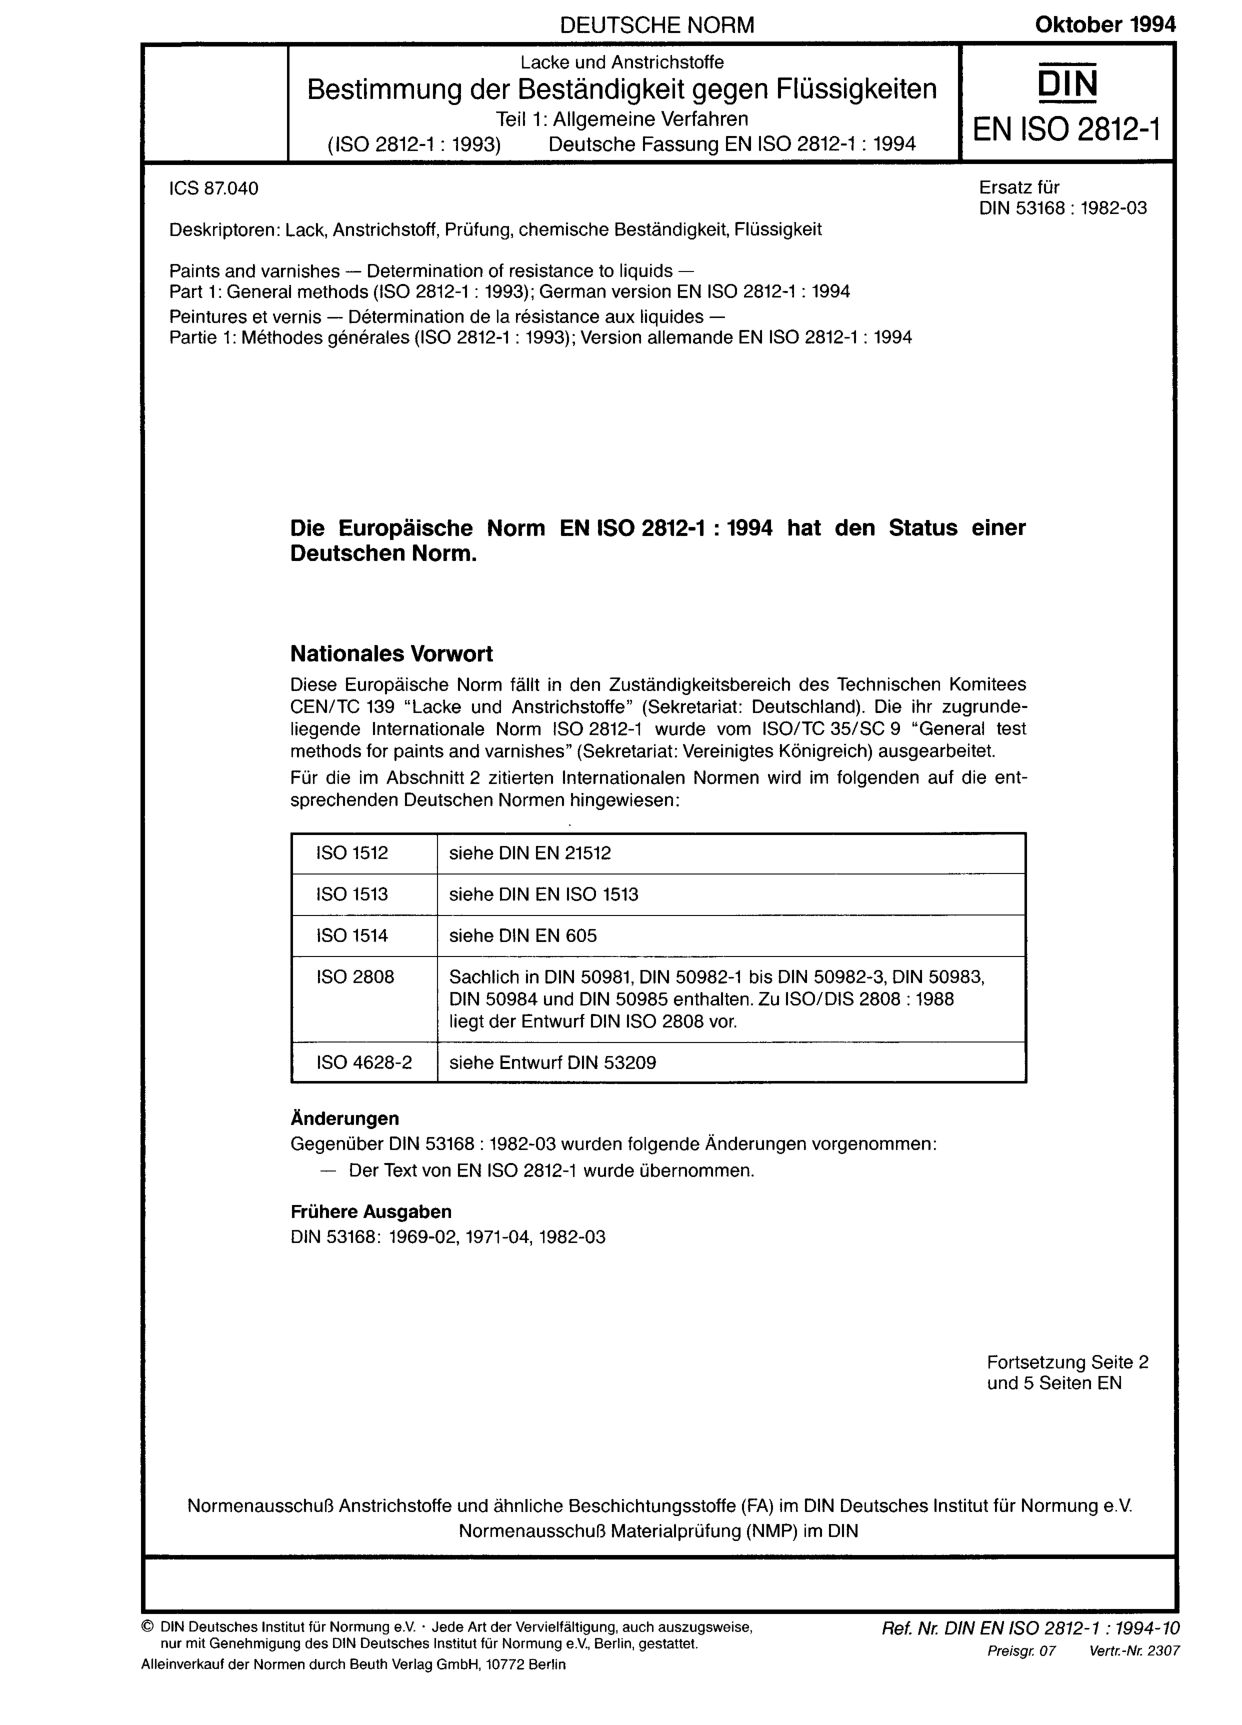 DIN EN ISO 2812-1:1994封面图